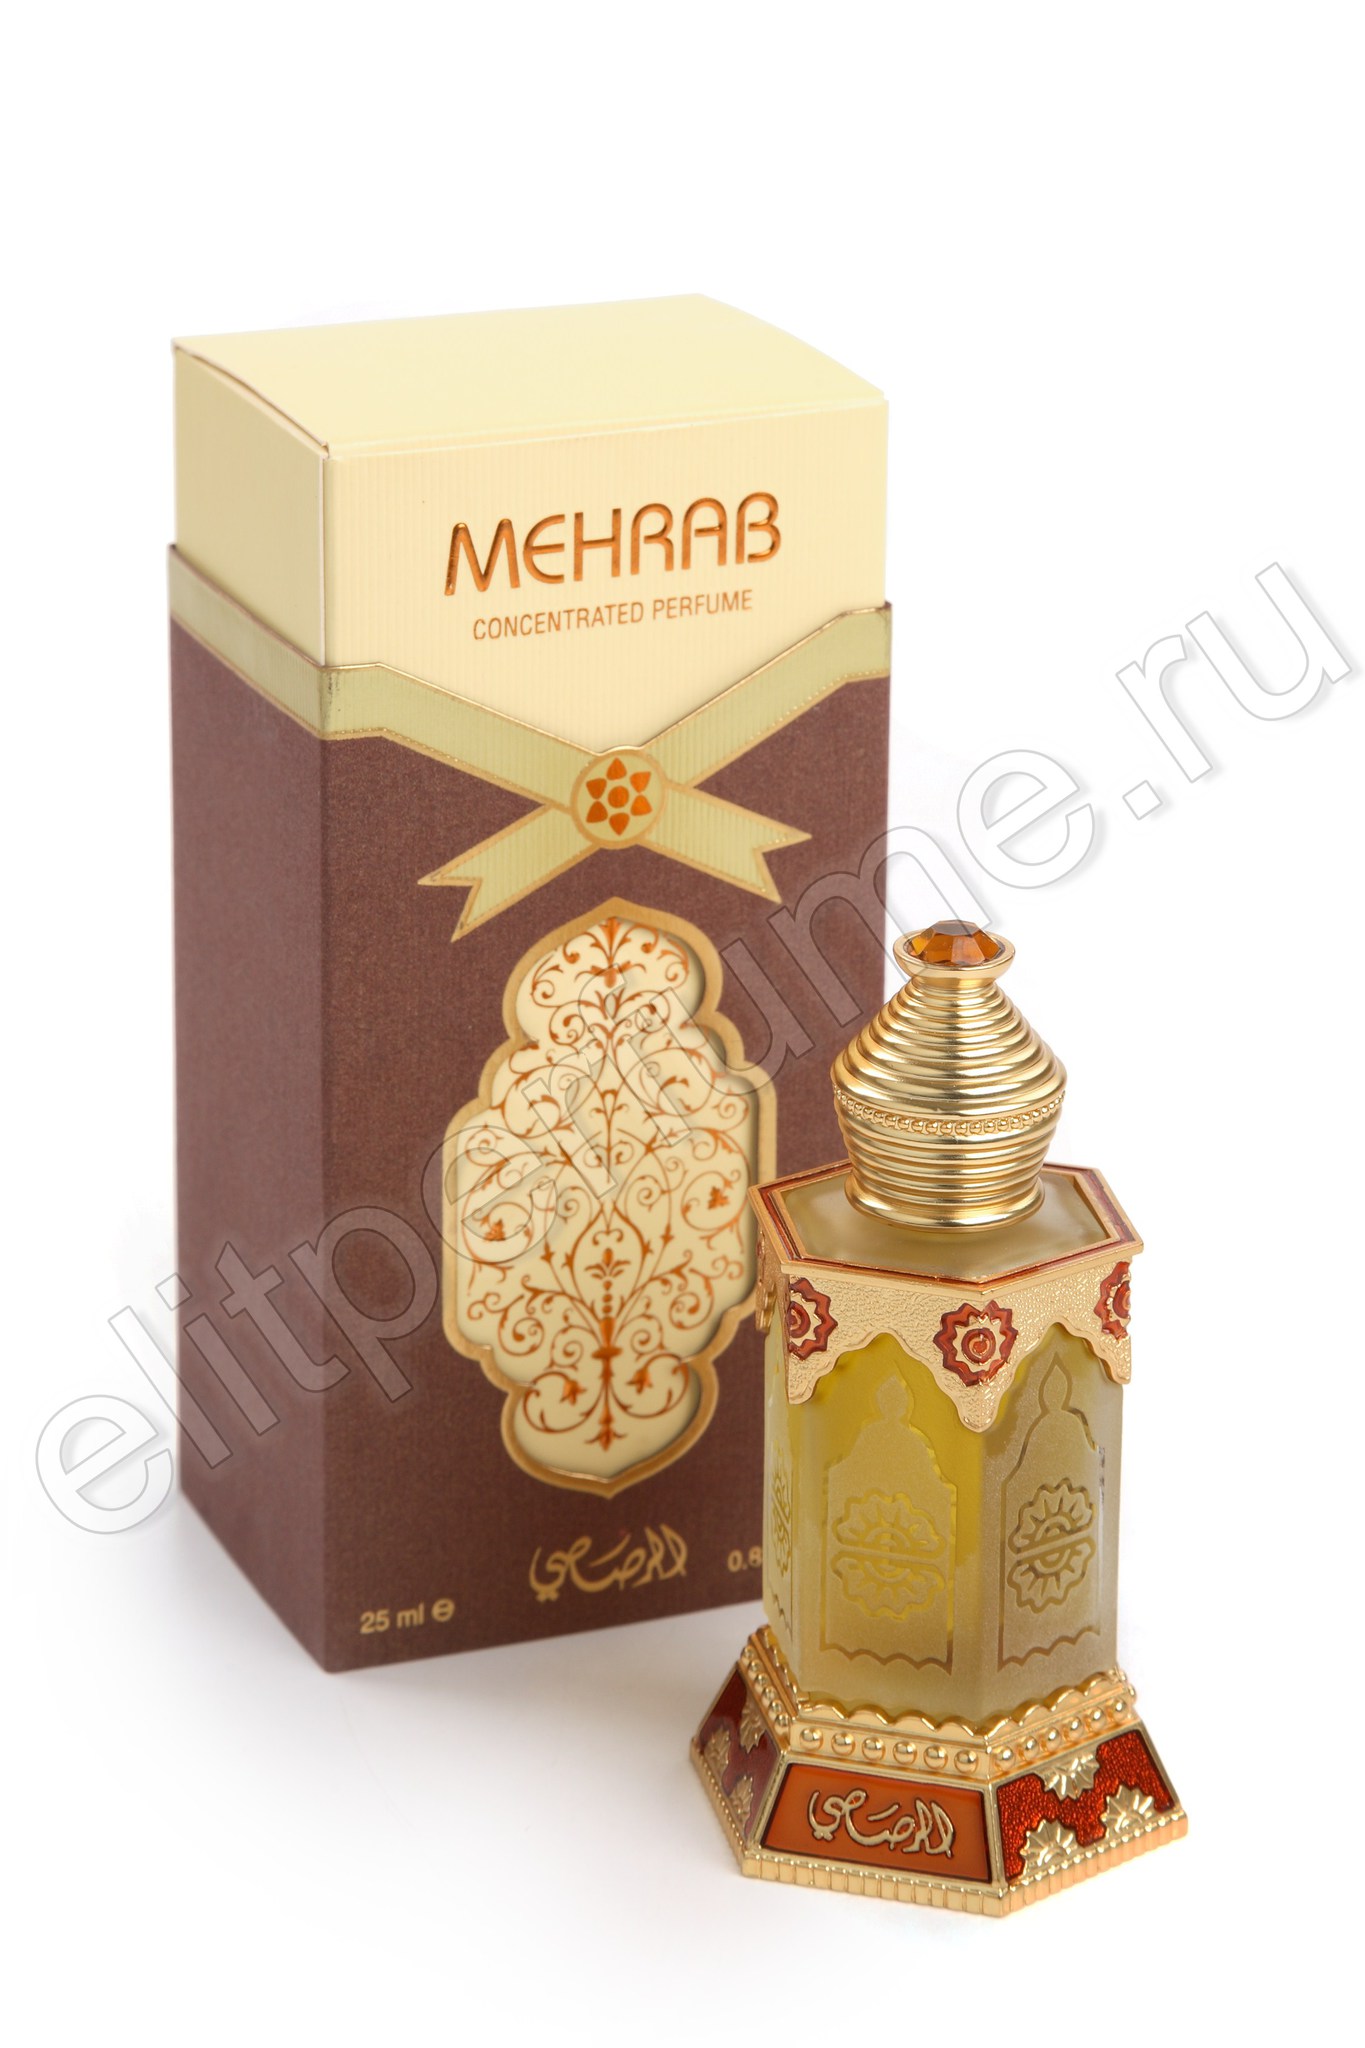 Пробники для арабских духов Мехраб Mehrab 1 мл арабские масляные духи от Расаси Rasasi Perfumes